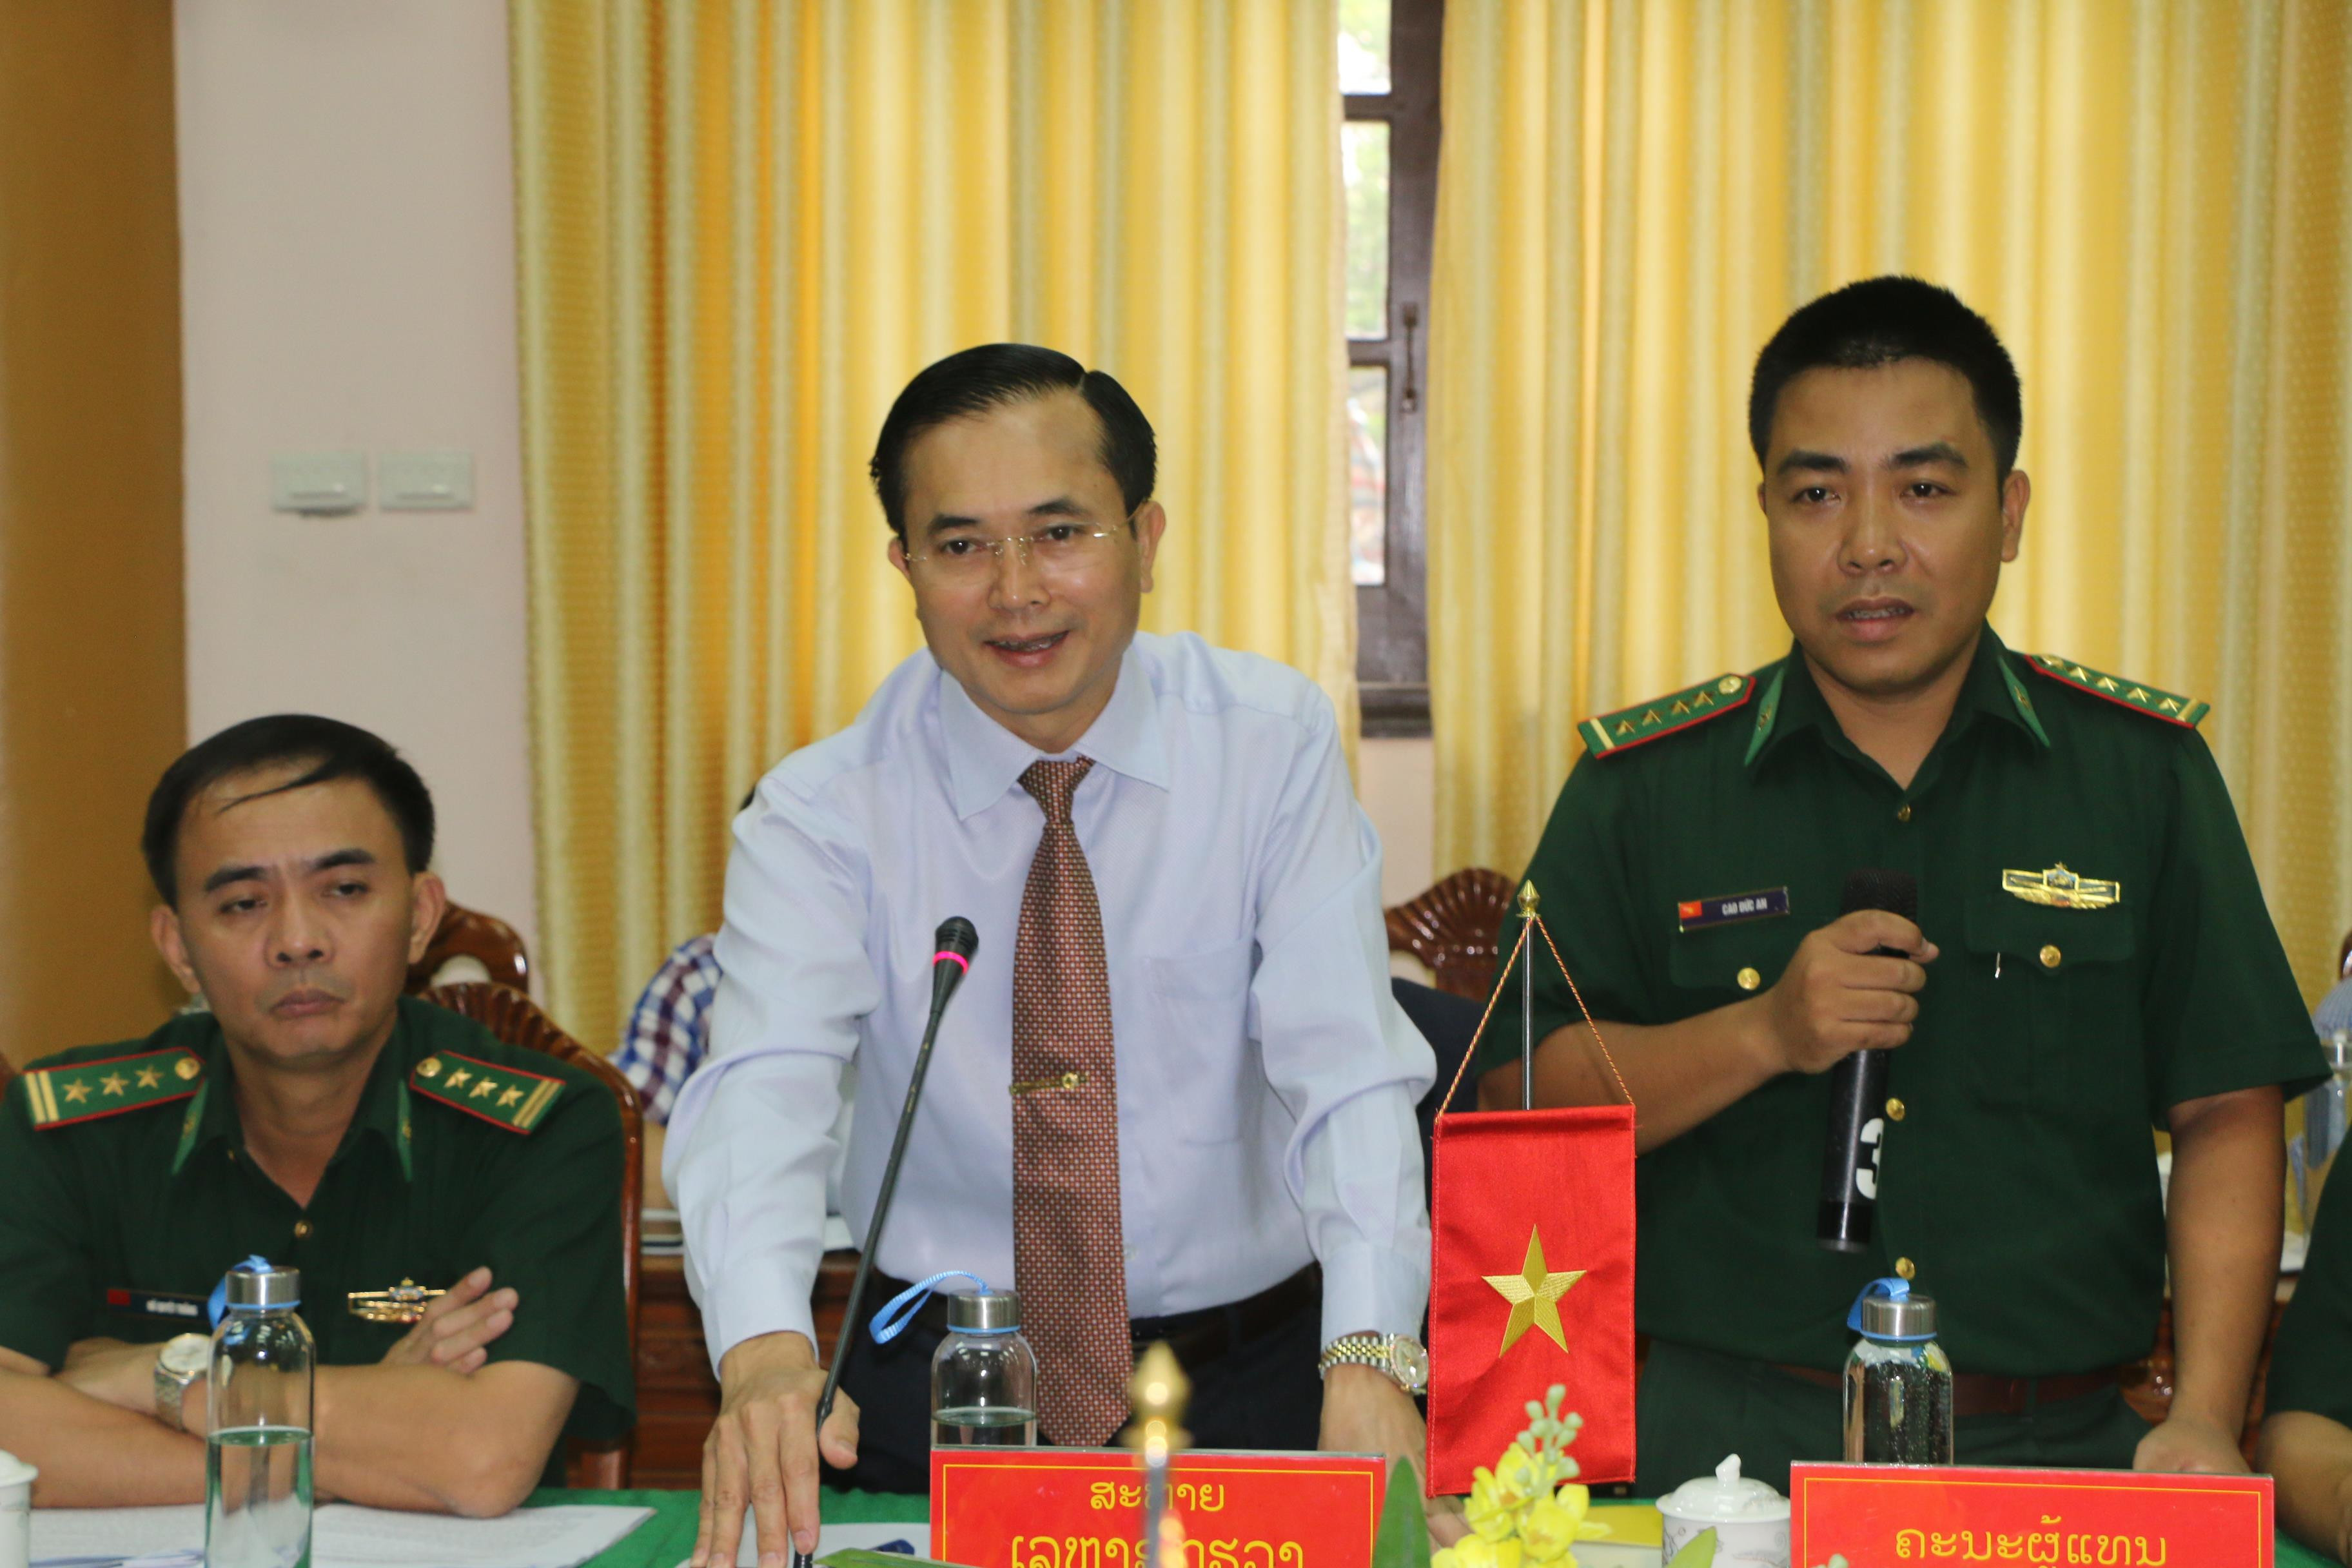 Đồng chí Lê Ngọc Hoa- Ủy viên BCH đảng bộ tỉnh, Phó Chủ tịch UBND tỉnh Nghệ An